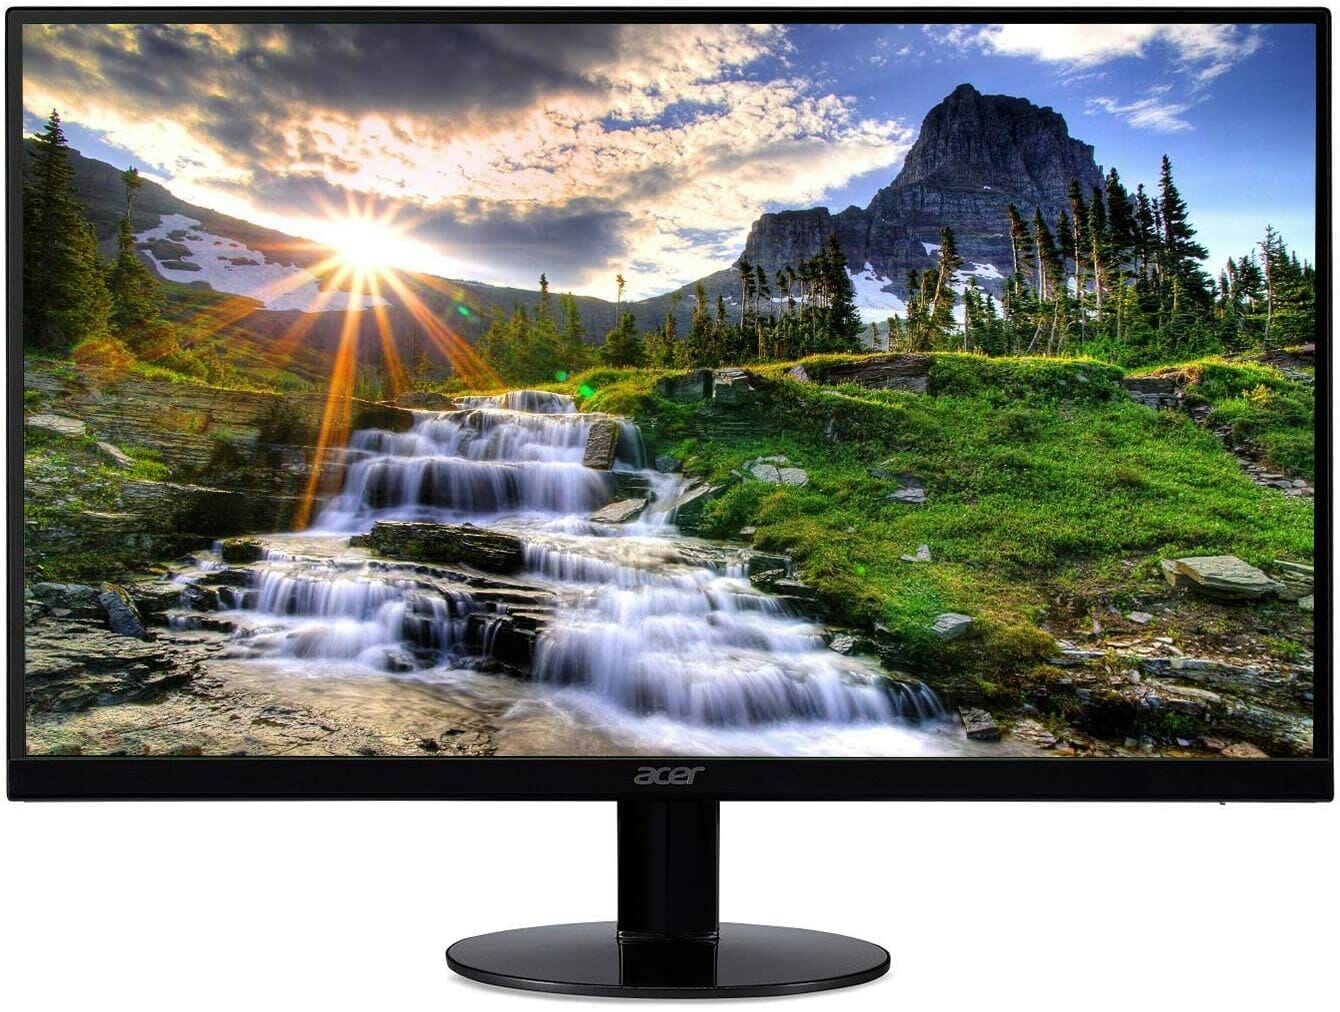 Acer SB220Q monitor